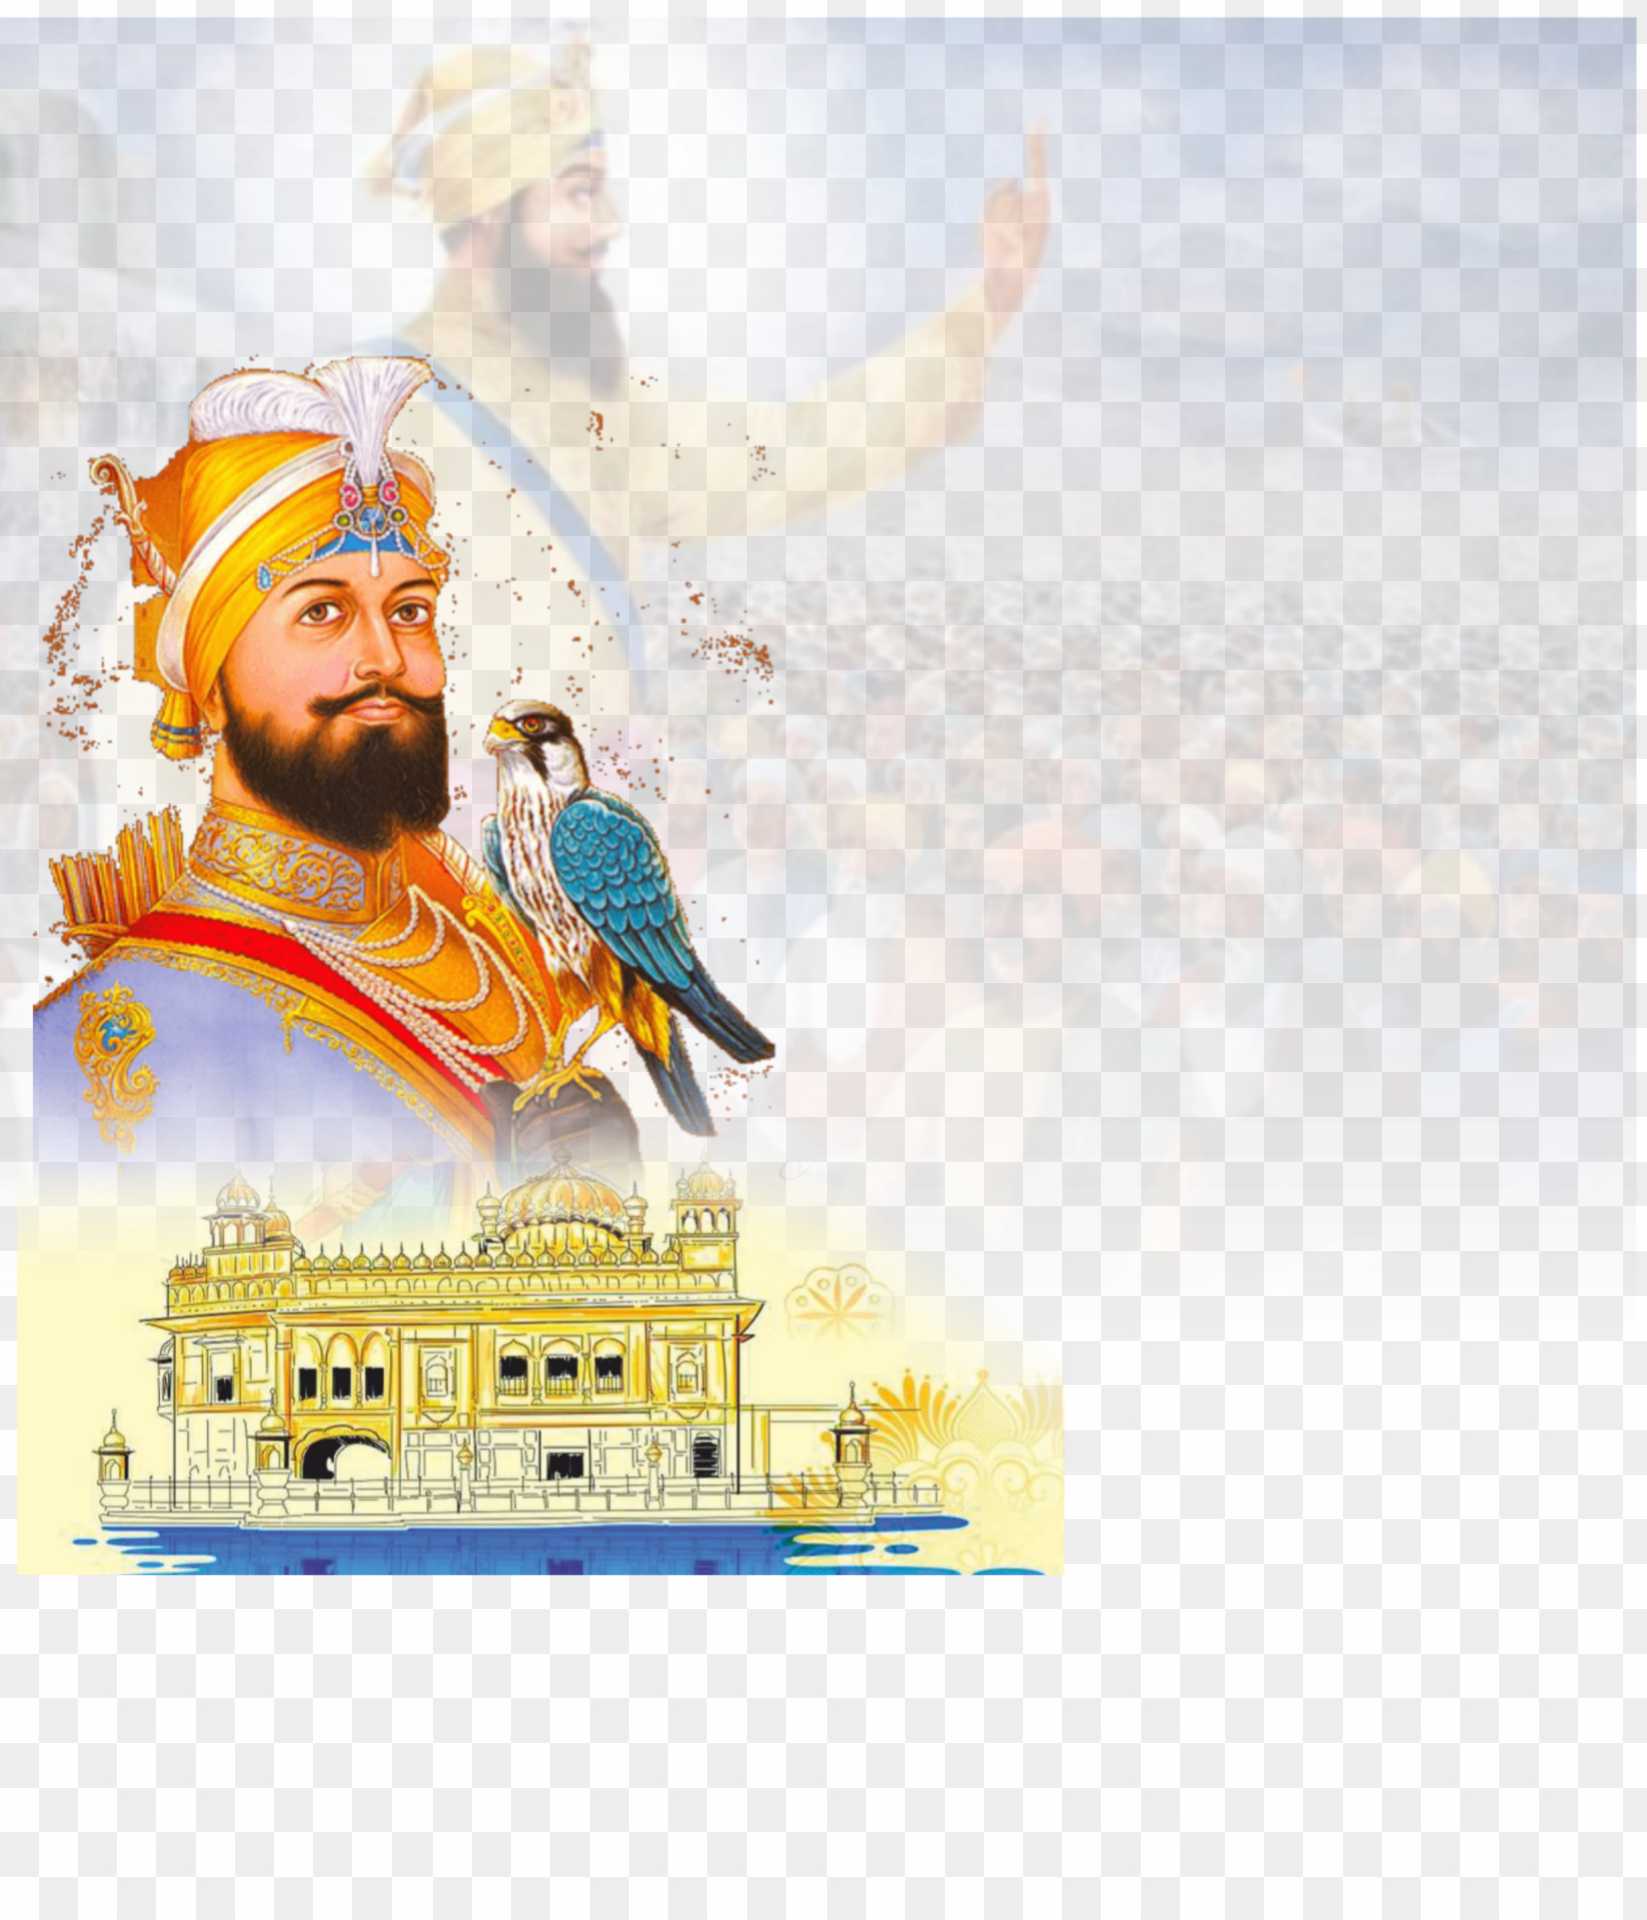 Guru Govind Singh background PNG images